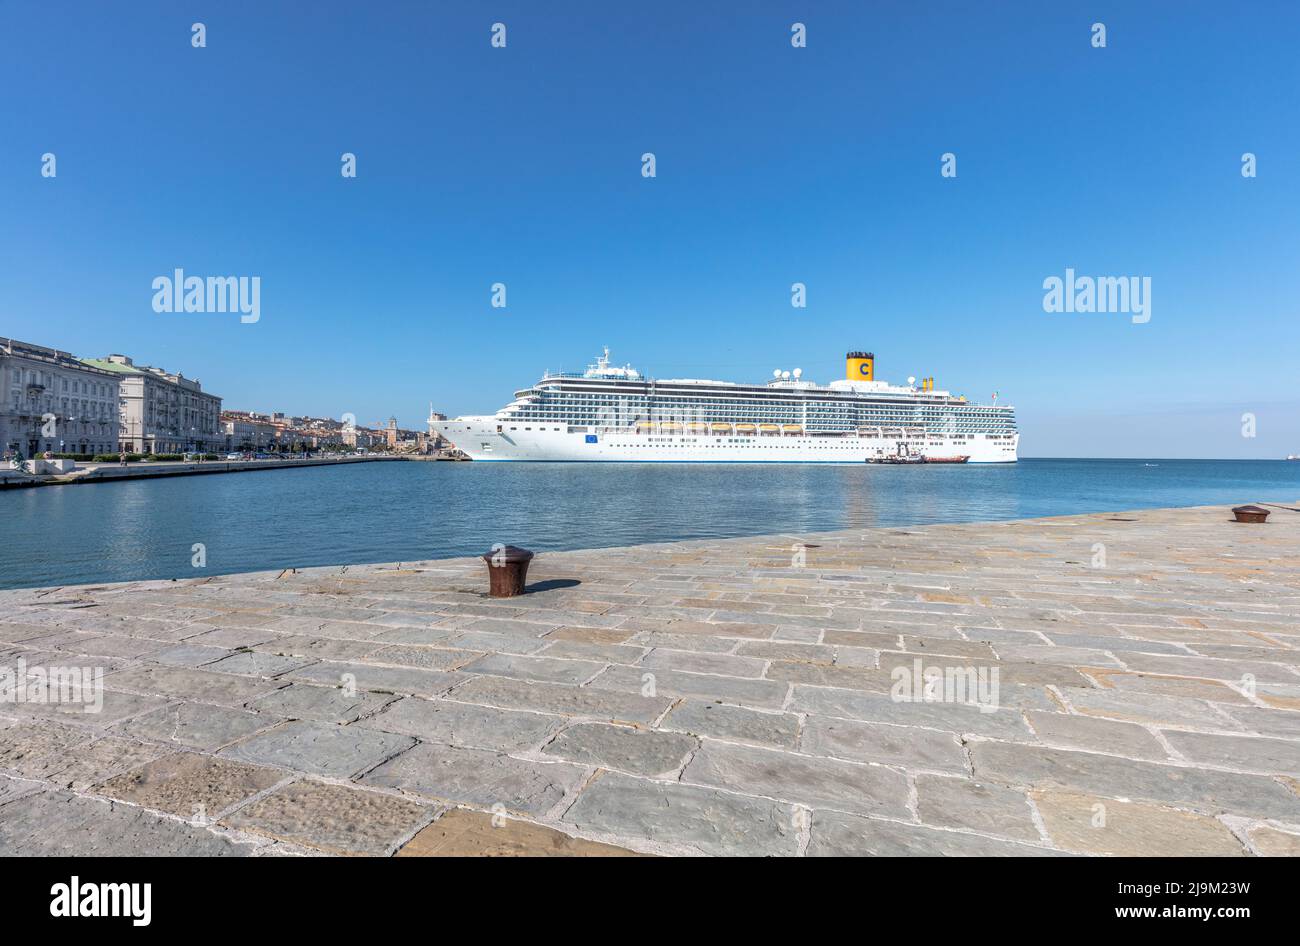 Bateau de croisière Costa Luminosa amarré dans le port de Trieste vu de la jetée en pierre de Molo Audace Banque D'Images